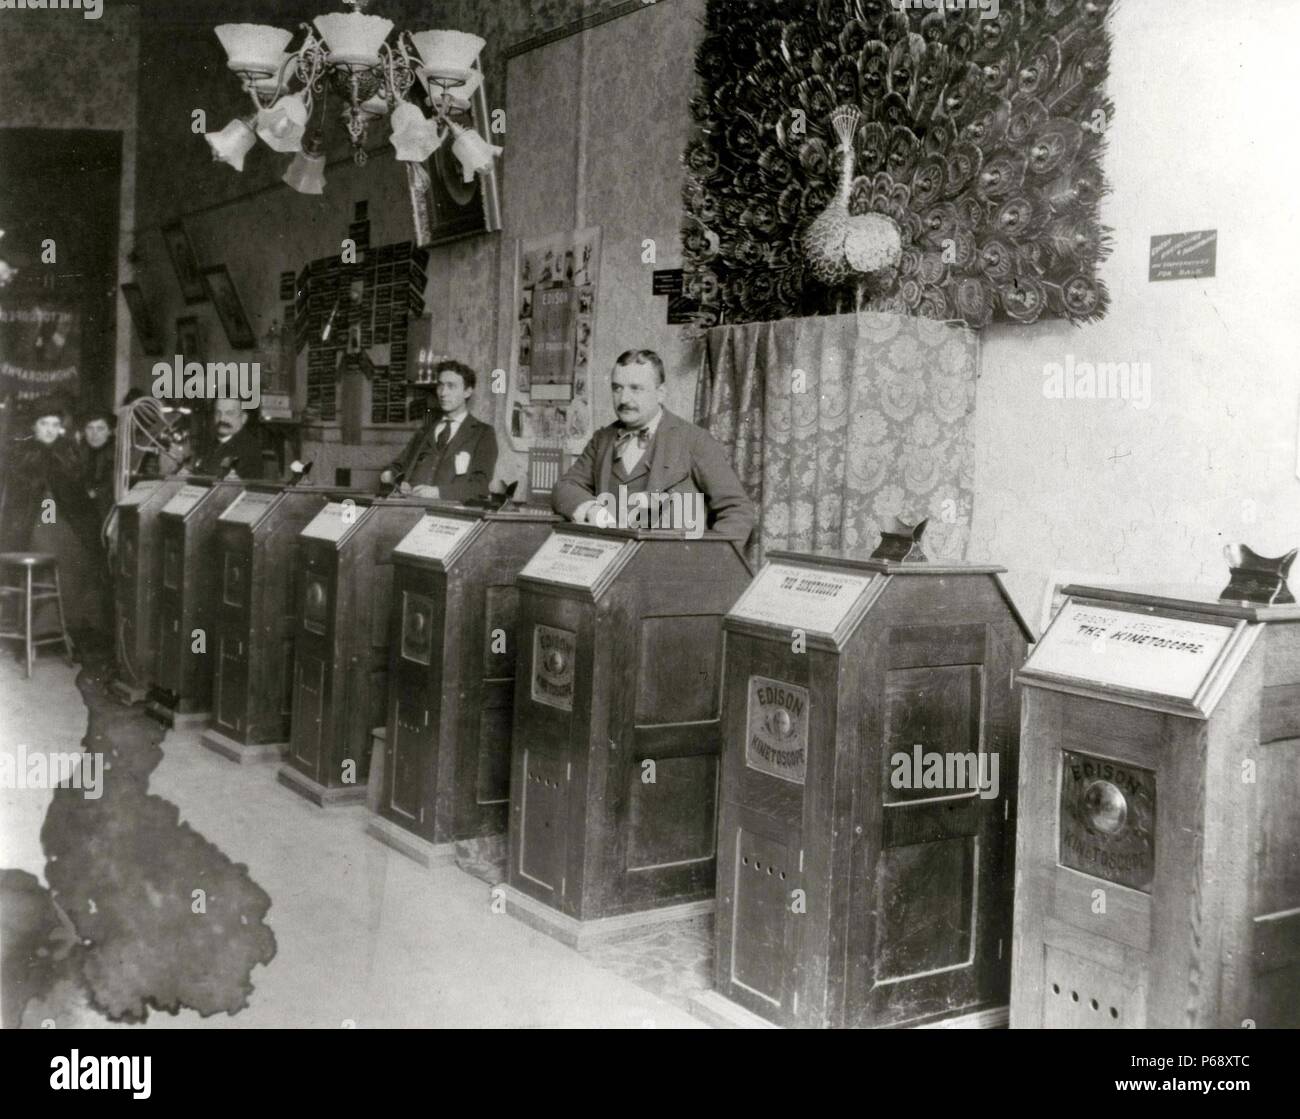 Das kinetoscope ist eine frühe motion picture Ausstellung Gerät. Das kinetoscope war für Filme von einer Person zu einer Zeit durch ein Guckloch Viewer Fenster oben auf dem Gerät angezeigt werden. Das kinetoscope erzeugt die Illusion von Bewegung durch die Vermittlung ein Streifen aus perforiertem film Lager sequentiellen Bildern über eine Lichtquelle. Zunächst in konzeptionell von US-amerikanischen Erfinder Thomas Edison 1888 beschrieben, Stockfoto